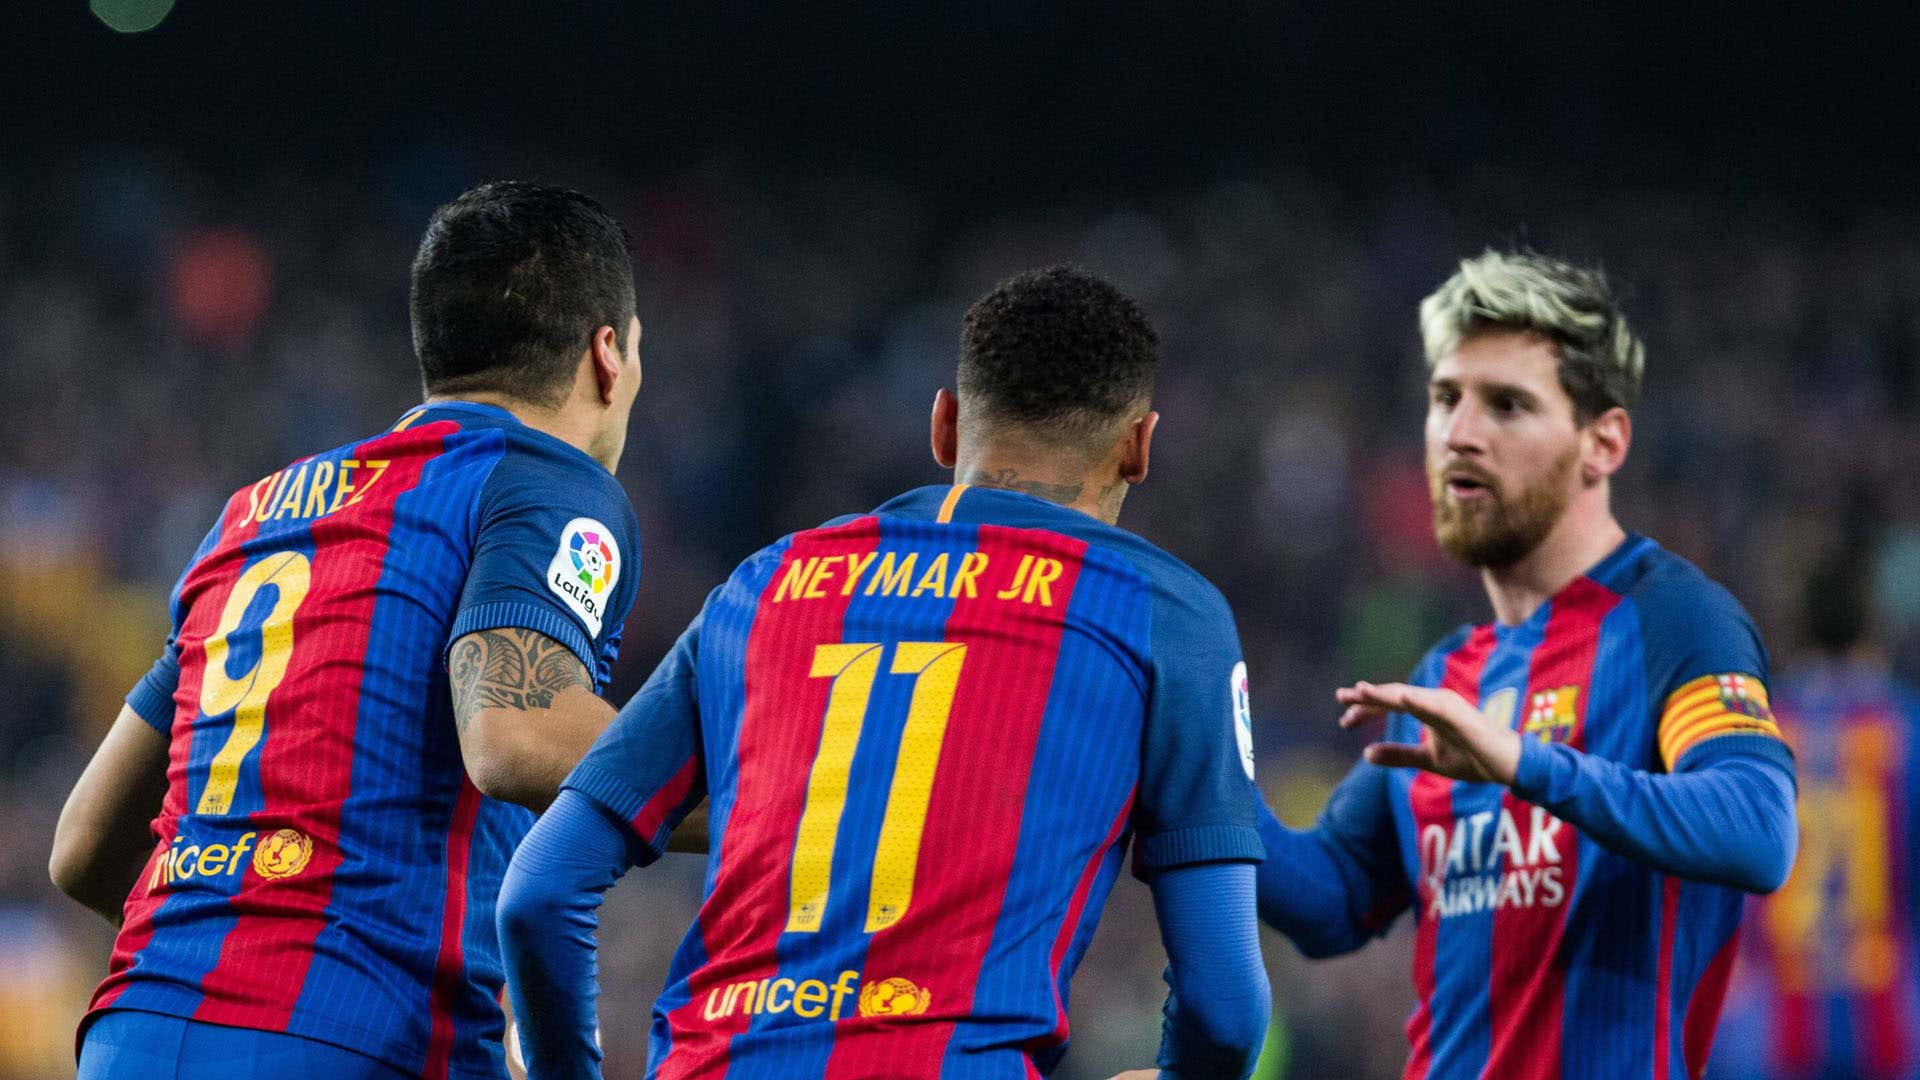 MSN: MSN - đội hình tấn công nguy hiểm của Barcelona với Lionel Messi, Luis Suarez và Neymar. Xem lại những màn trình diễn tuyệt vời của ba ngôi sao này khi họ đưa Barca đến đỉnh vinh quang với các danh hiệu La Liga, UEFA Champions League và FIFA Club World Cup.